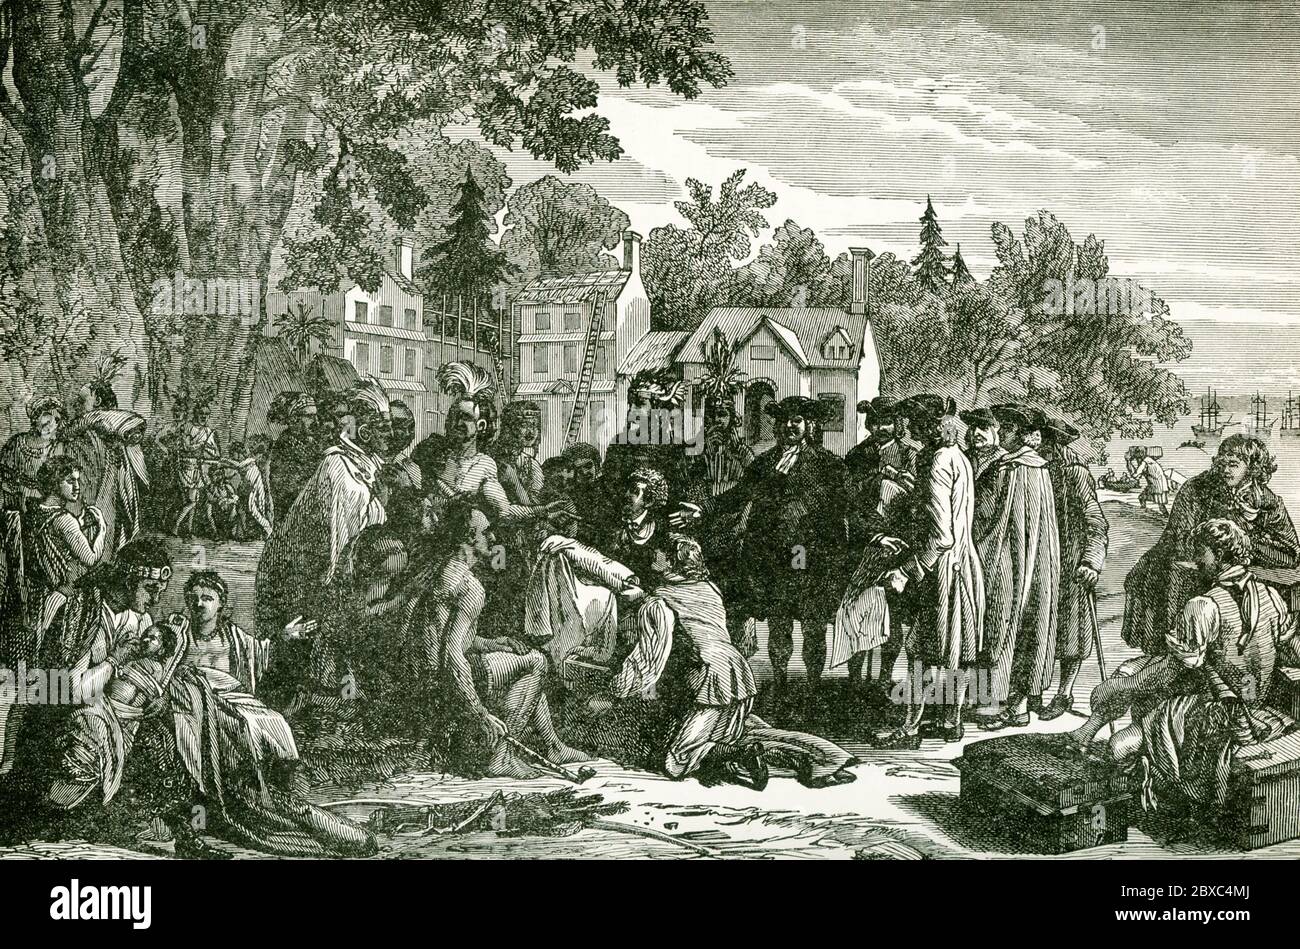 Diese Abbildung zeigt William Penn’s Vertrag mit den Indianern. William Penn (1644-1718) gründete die Provinz Pennsylvania, die britische nordamerikanische Kolonie, die der US-Staat Pennsylvania wurde. Penn machte einen Vertrag mit den Indianern (hier zu sehen) in Shackamaxon (nahe Kensington in Philadelphia) unter einer Ulme. Penn entschied sich, Land für seine Kolonie durch Geschäft anstatt Eroberung zu erwerben. Er zahlte den Indianern 1200 Pfund für ihr Land gemäß dem Vertrag, ein Betrag, der als fair angesehen wird. Stockfoto